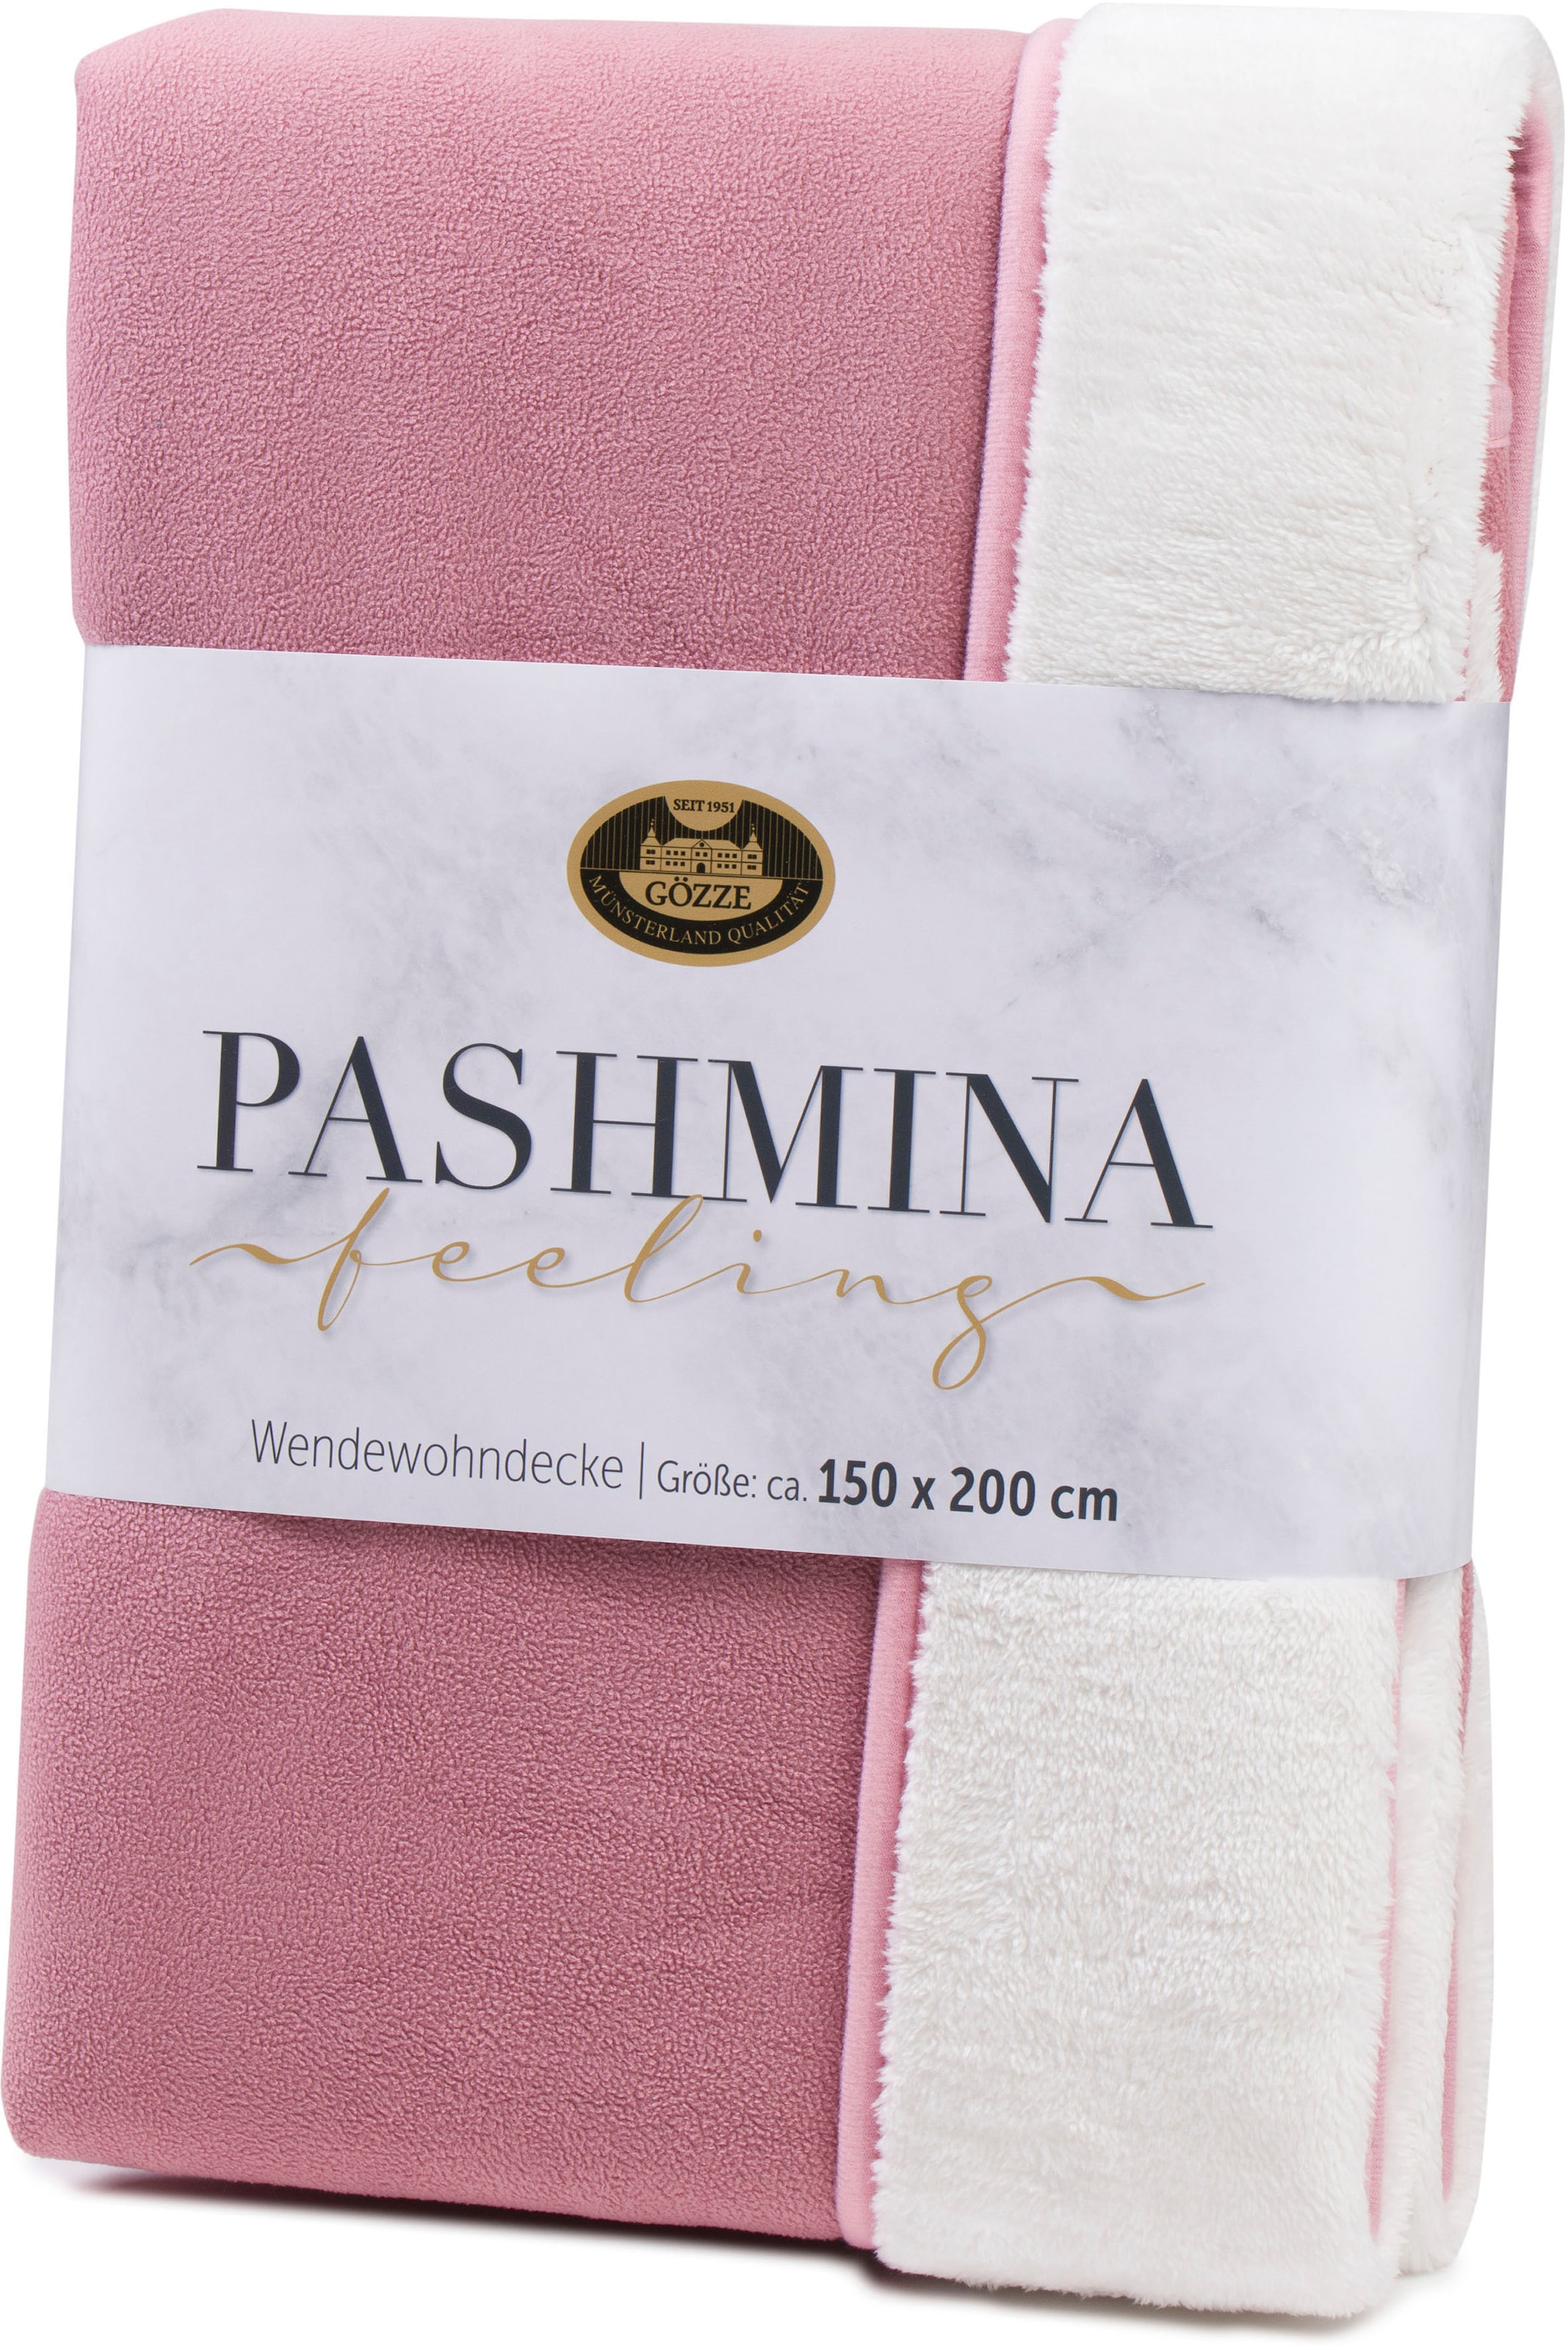 »Pashmina Wendewohndecke«, und bestellen schlichte schnell Unterseite Wohndecke flauschig bequem Gözze